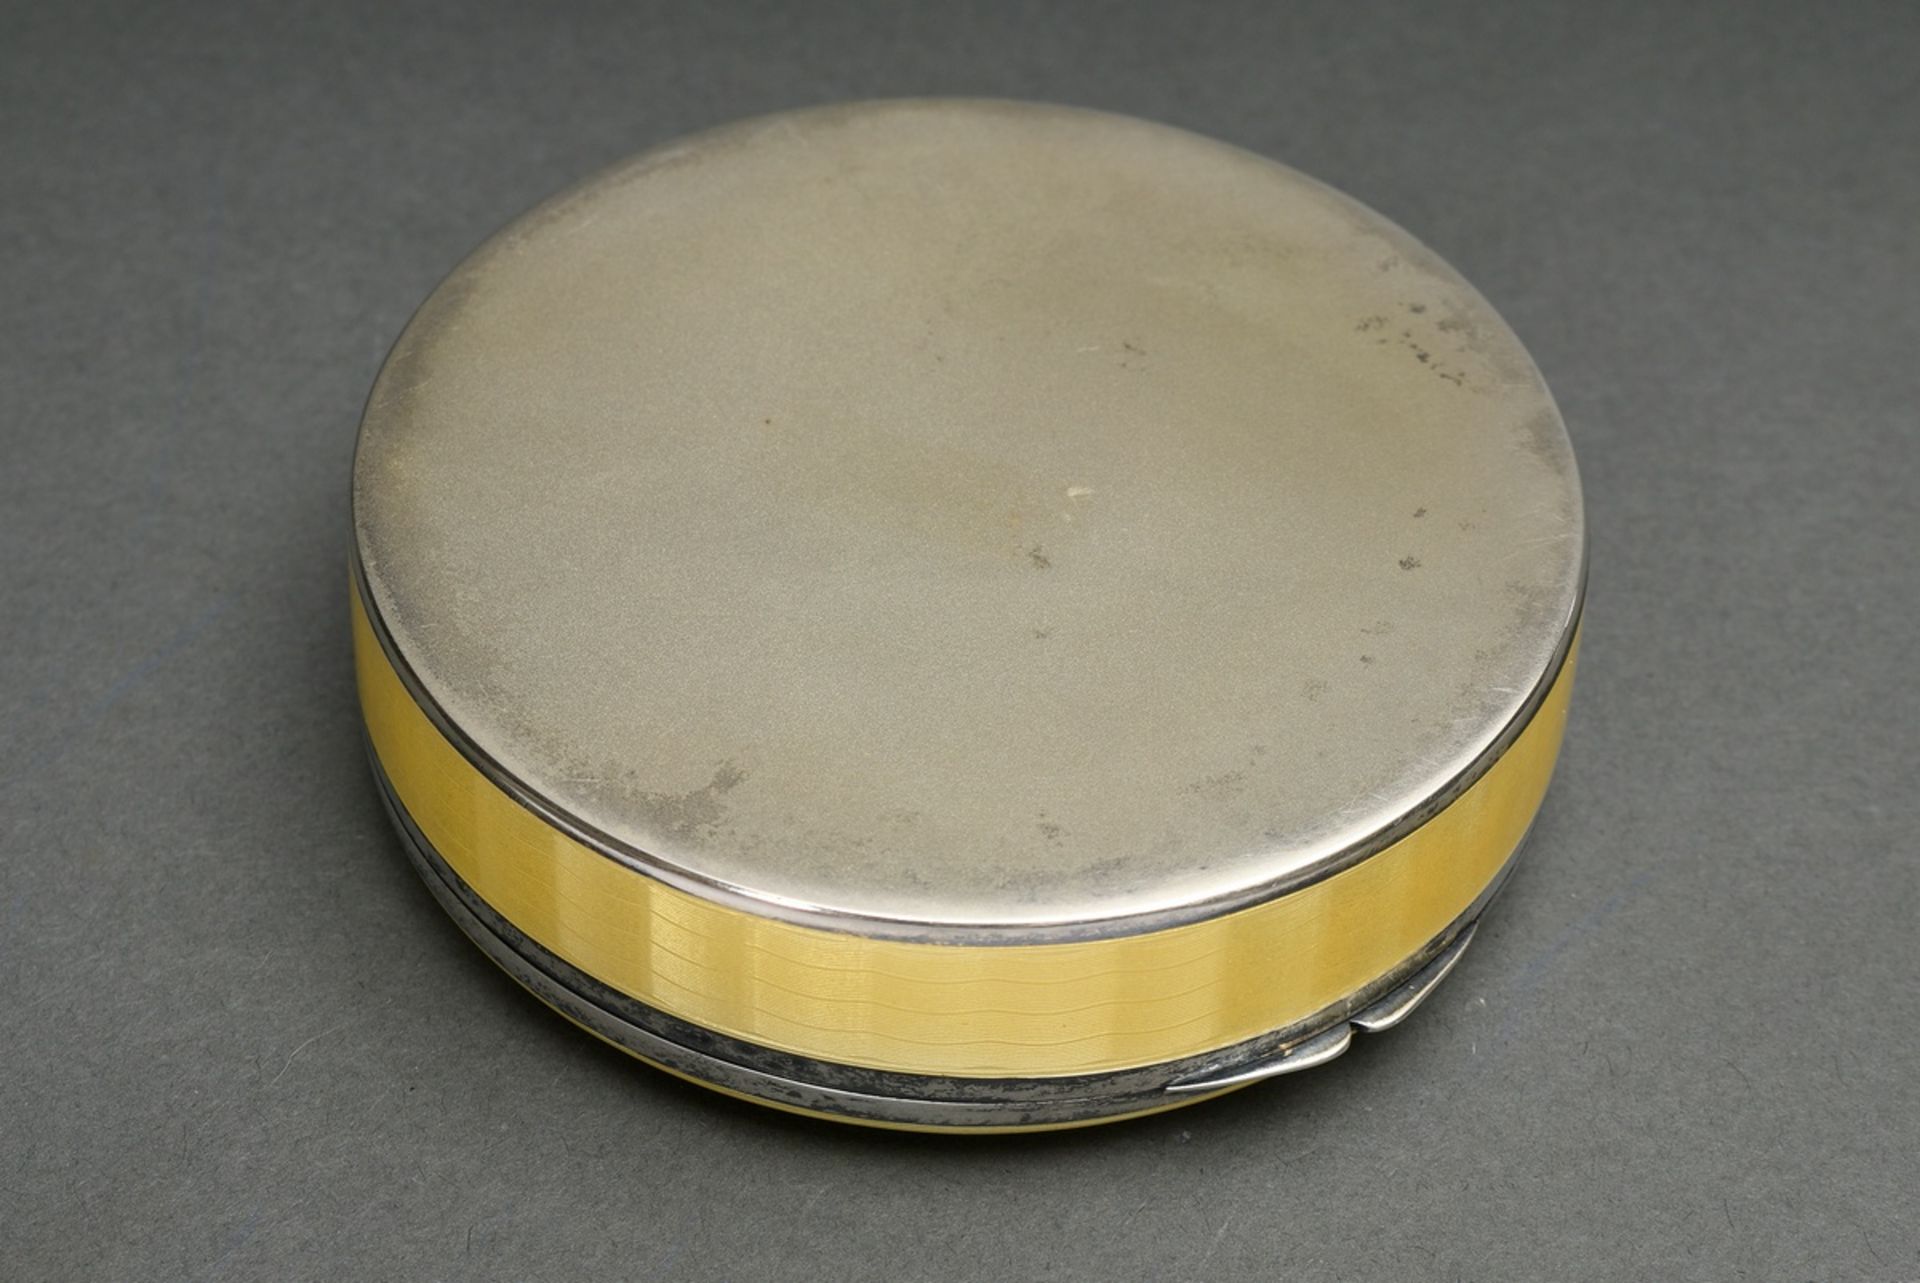 Runde Dose mit gelbem Guilloché Emaille, Ernst Gideon Bek/Pforzheim, um 1910/1920, Silber 935 innen - Bild 3 aus 4